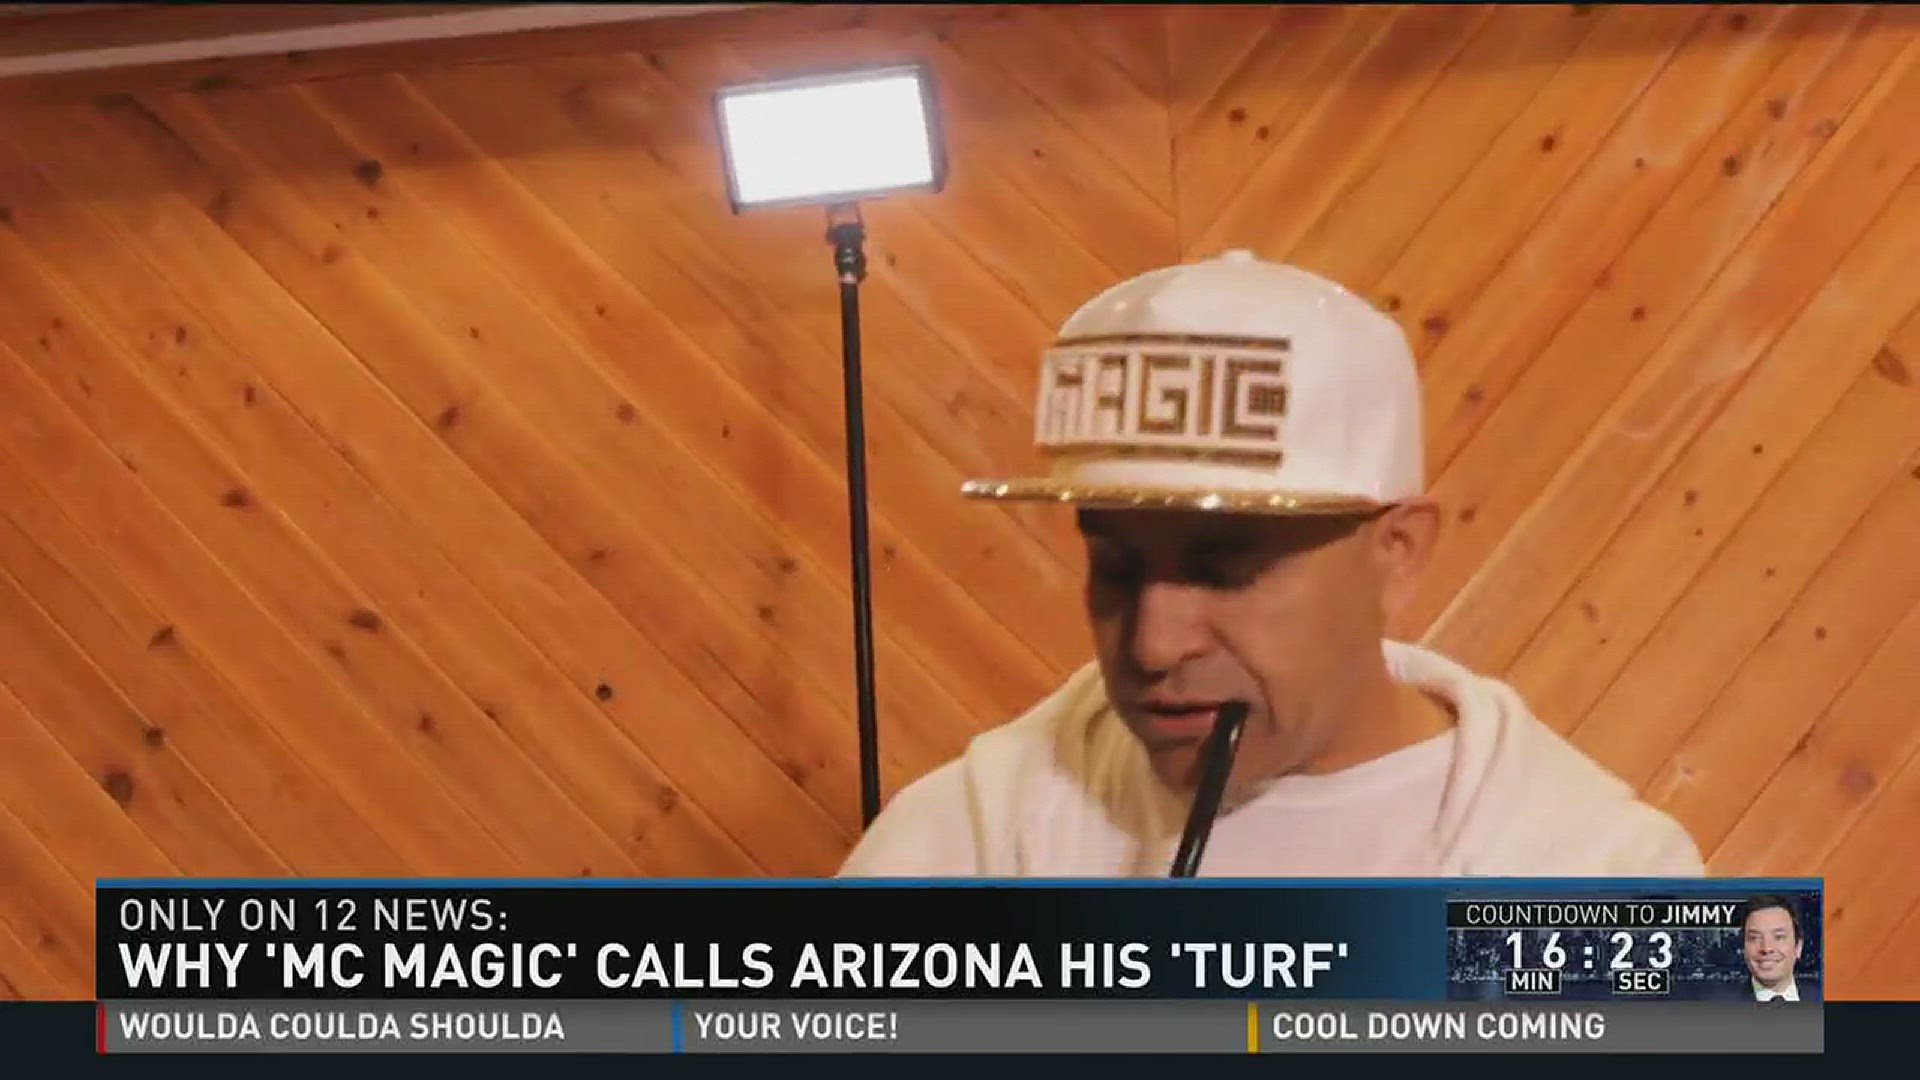 MC Magic calls Arizona his turf